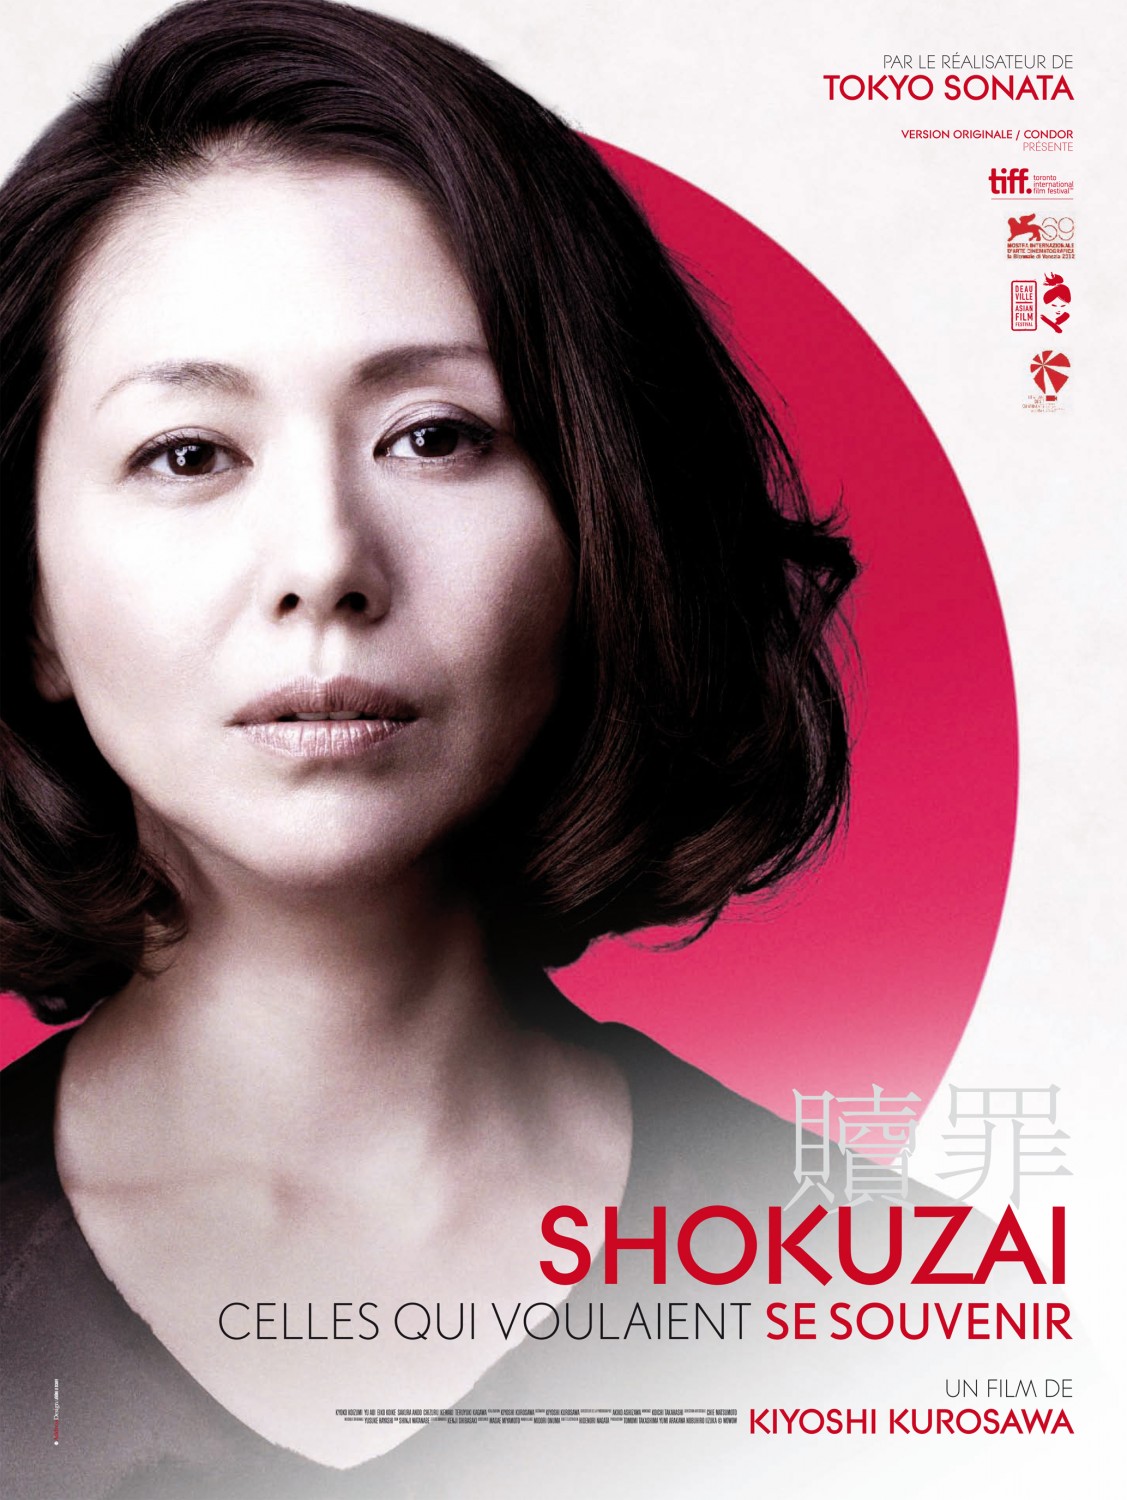 Extra Large Movie Poster Image for Shokuzai - Celles qui voulaient se souvenir (#1 of 2)